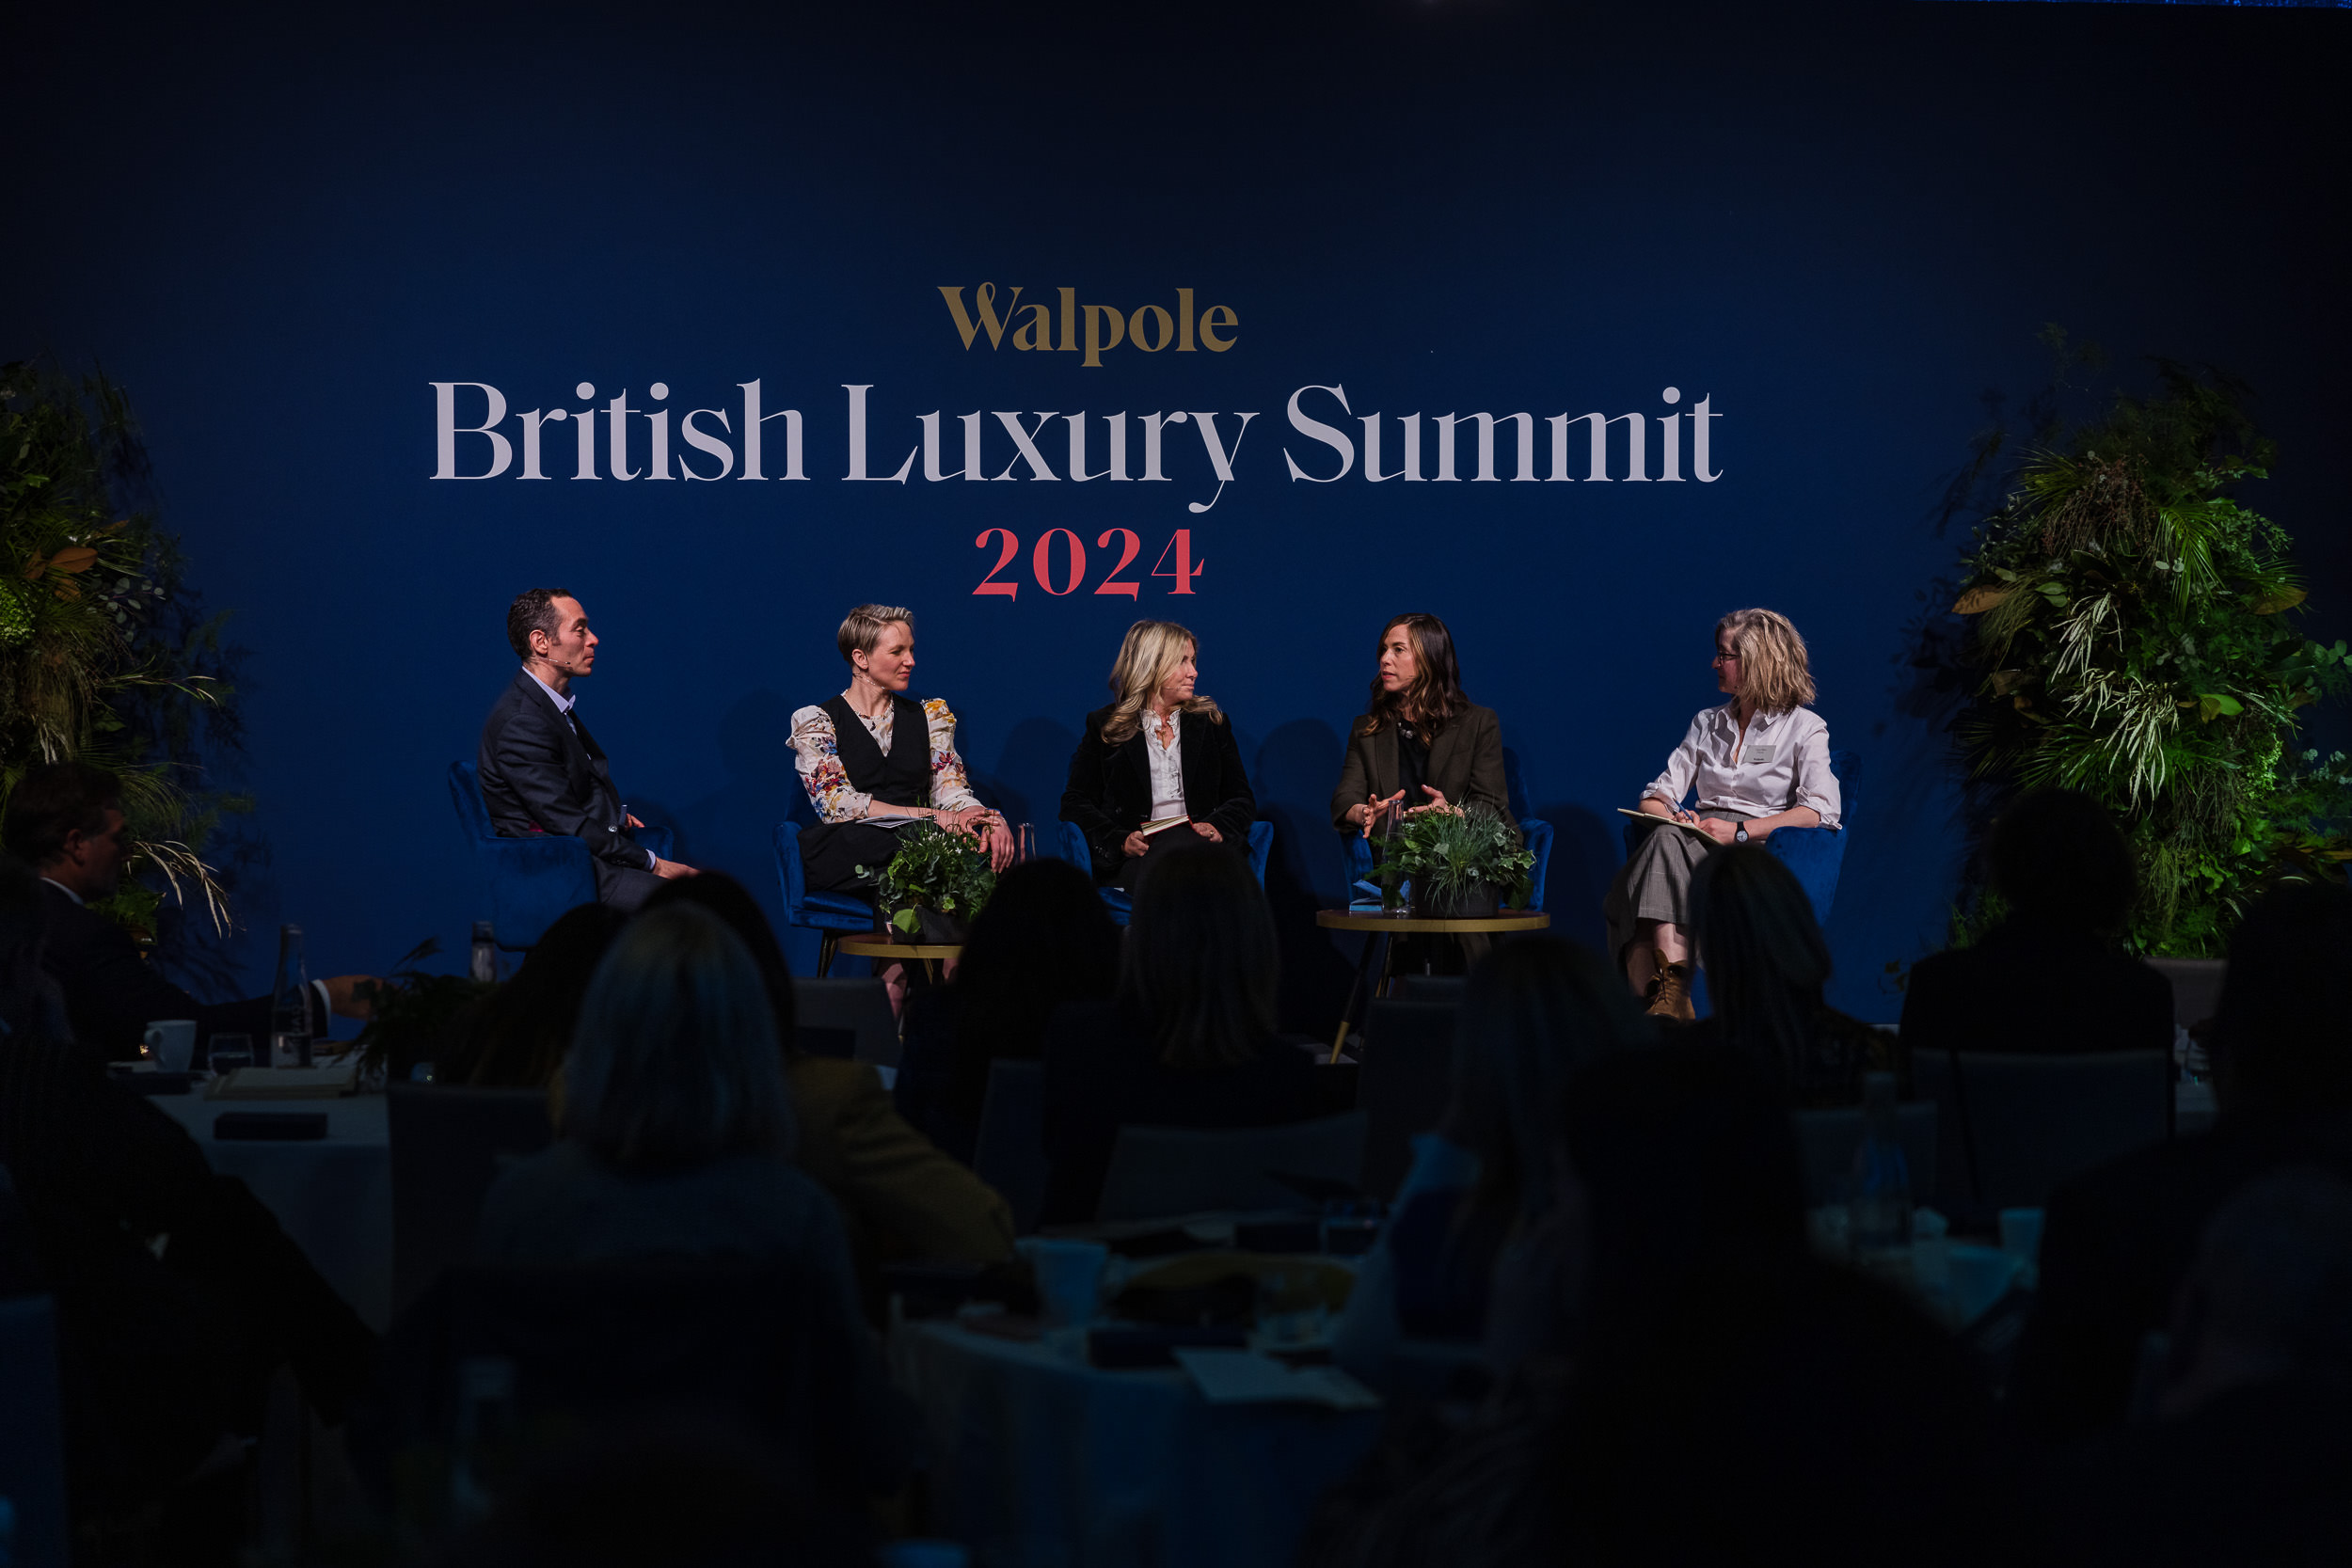 Walpole British Luxury Summit 2024 The Future of Luxury - biodiversity panel 